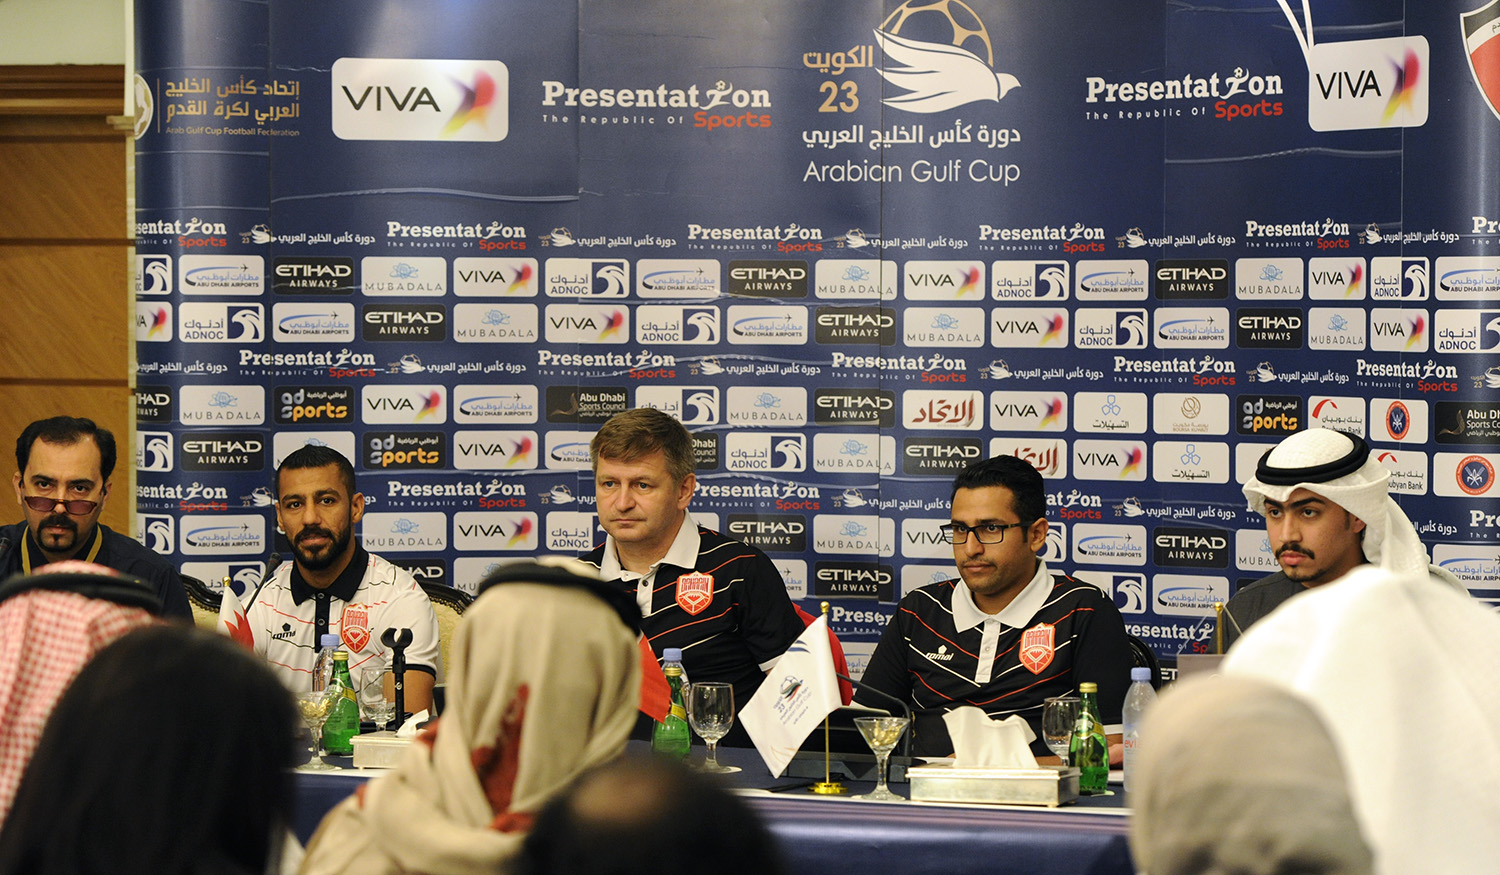 مدرب منتخب البحرين التشيكي ميروسلاف سكوب خلال المؤتمر الصحفي الذي عقد بالمركز الإعلامي للبطولة